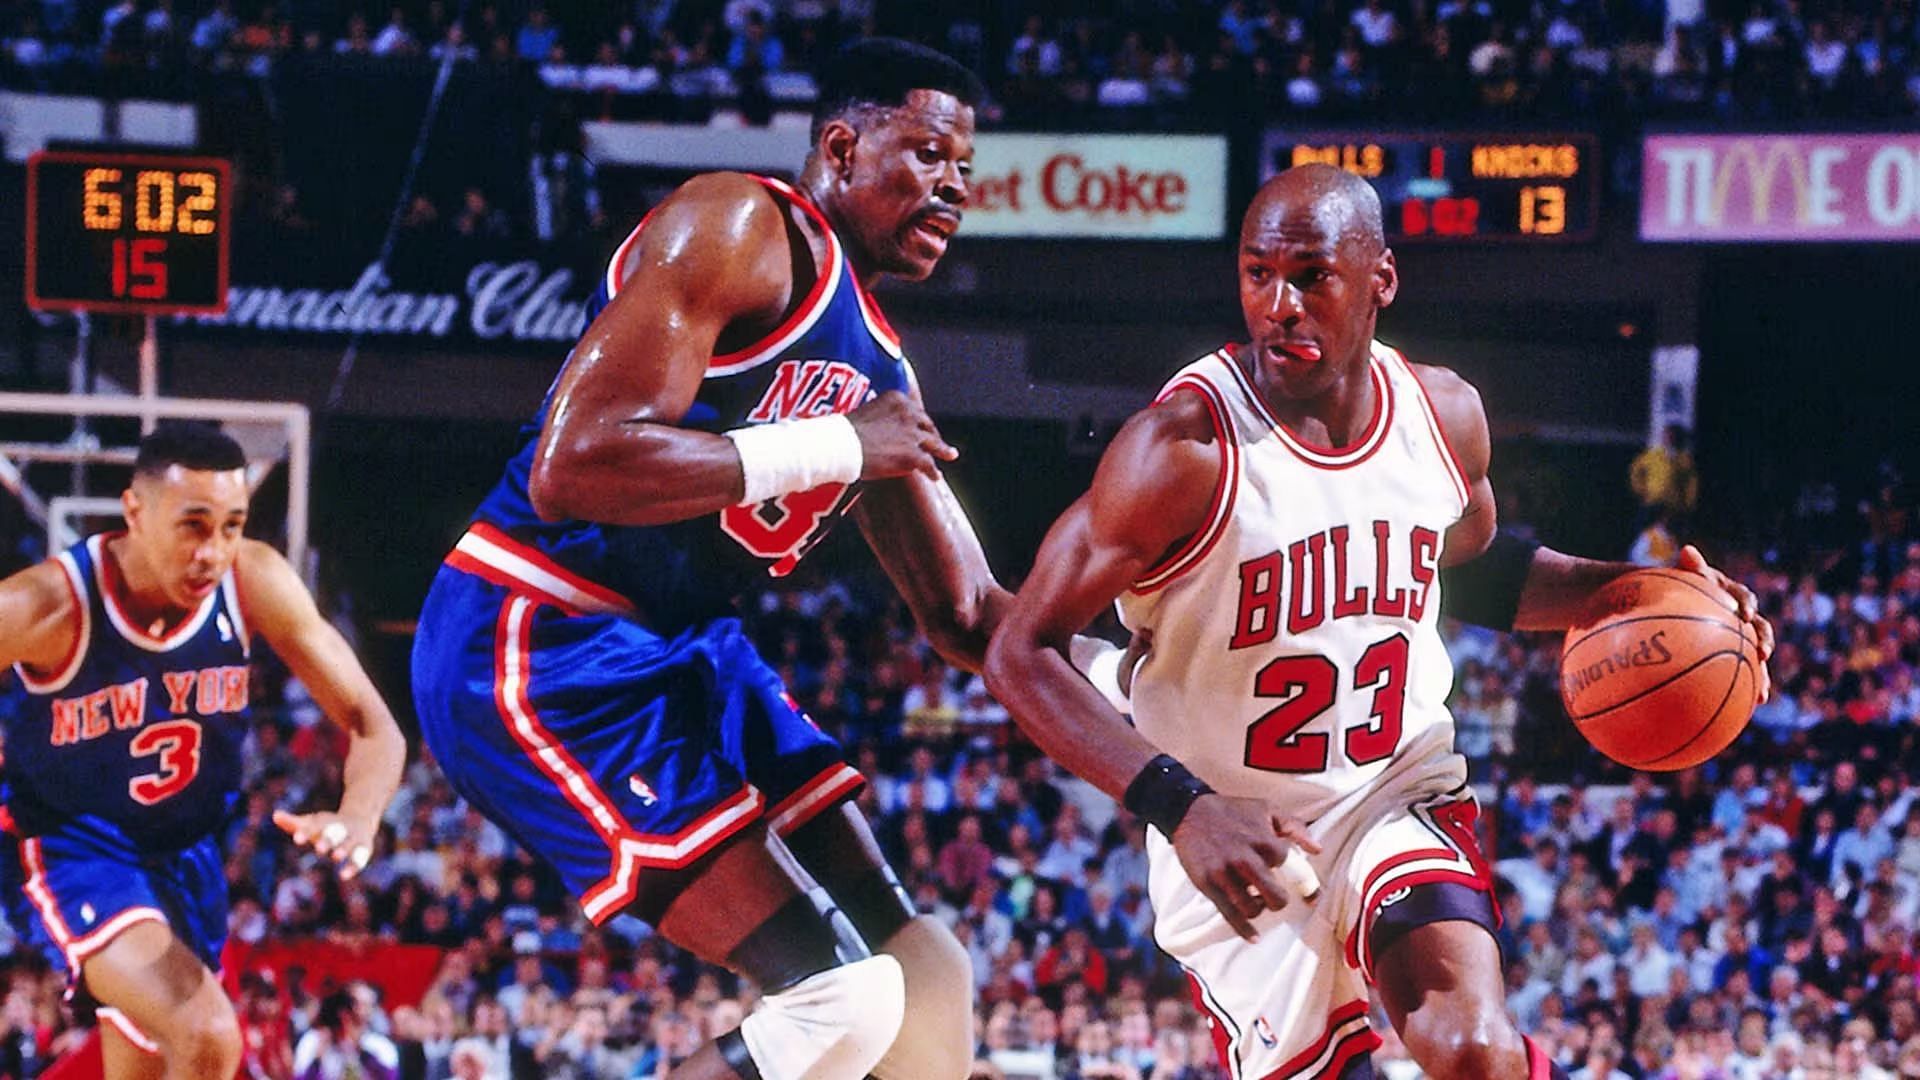 John Starks v Jordan's Bulls New York Knicks Autographed Framed